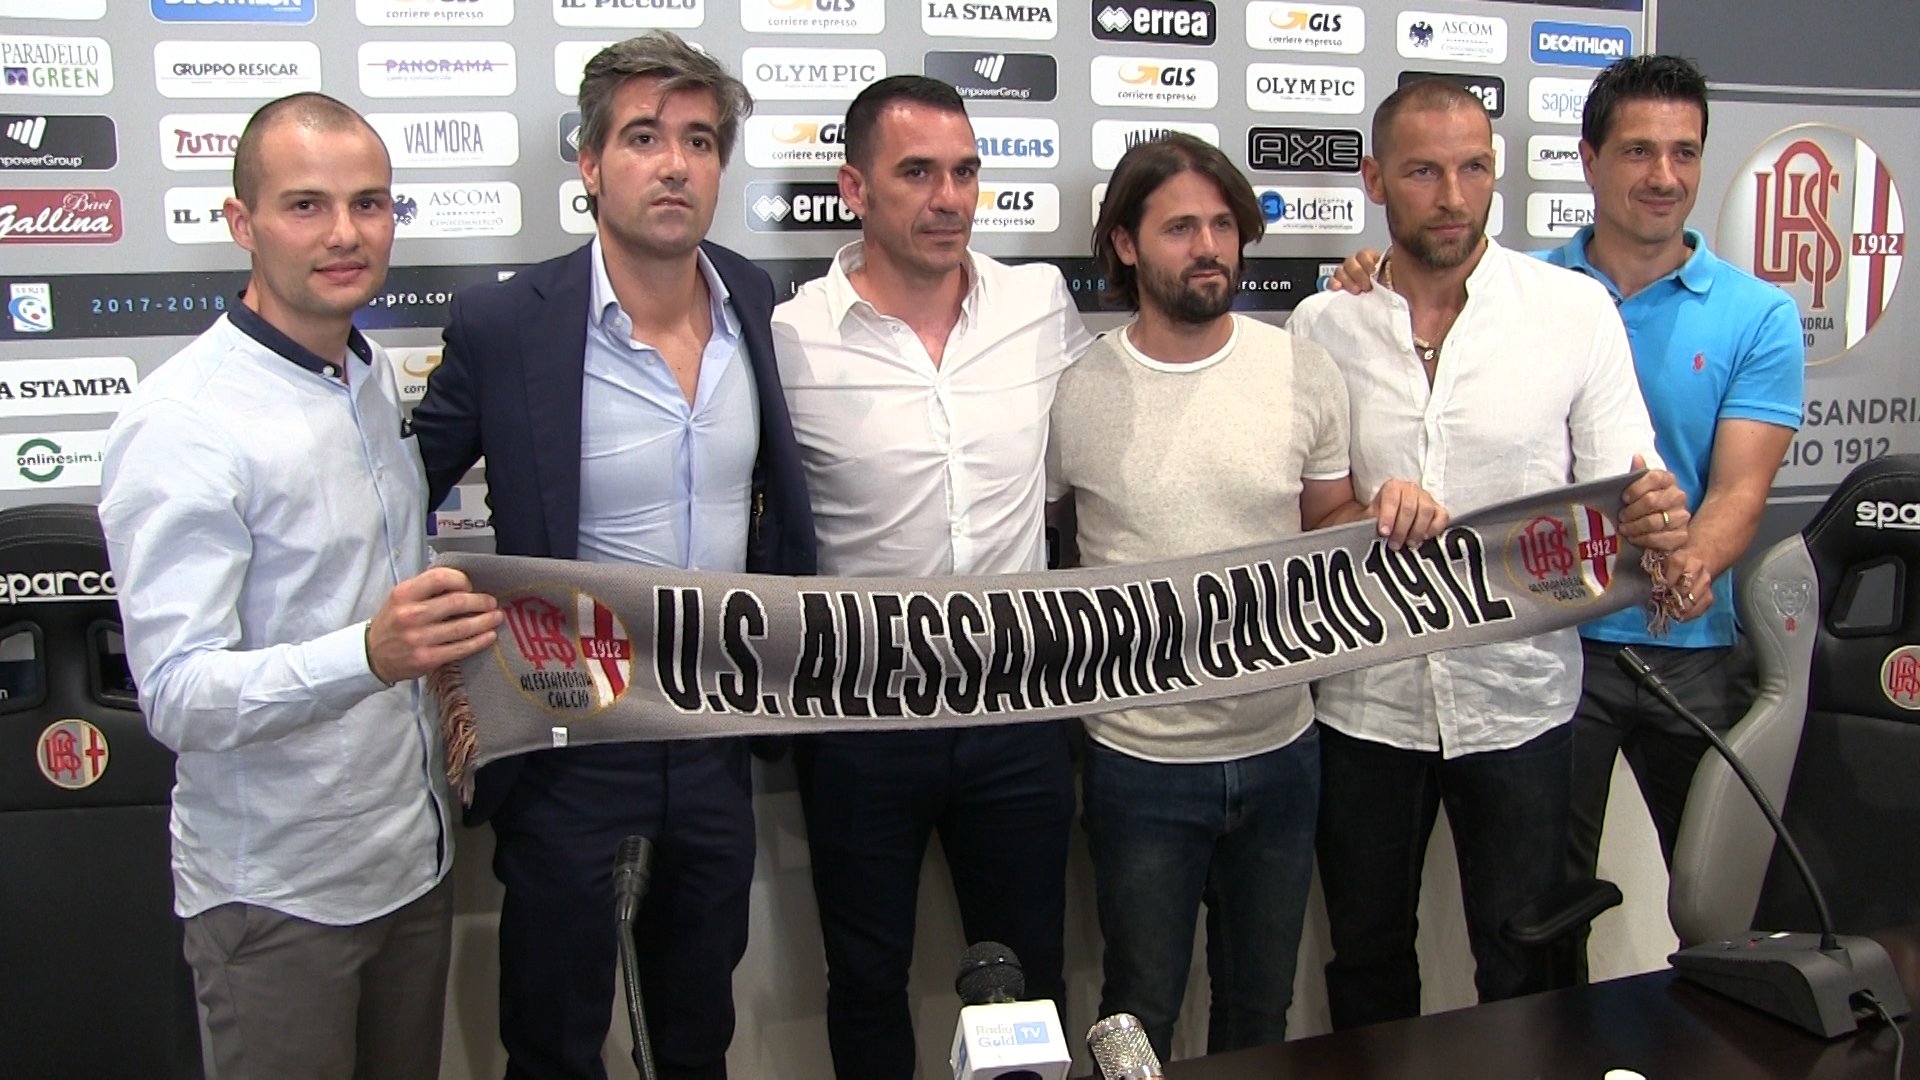 Alessandria: D’Agostino è pronto. “Calcio propositivo e pazienza”